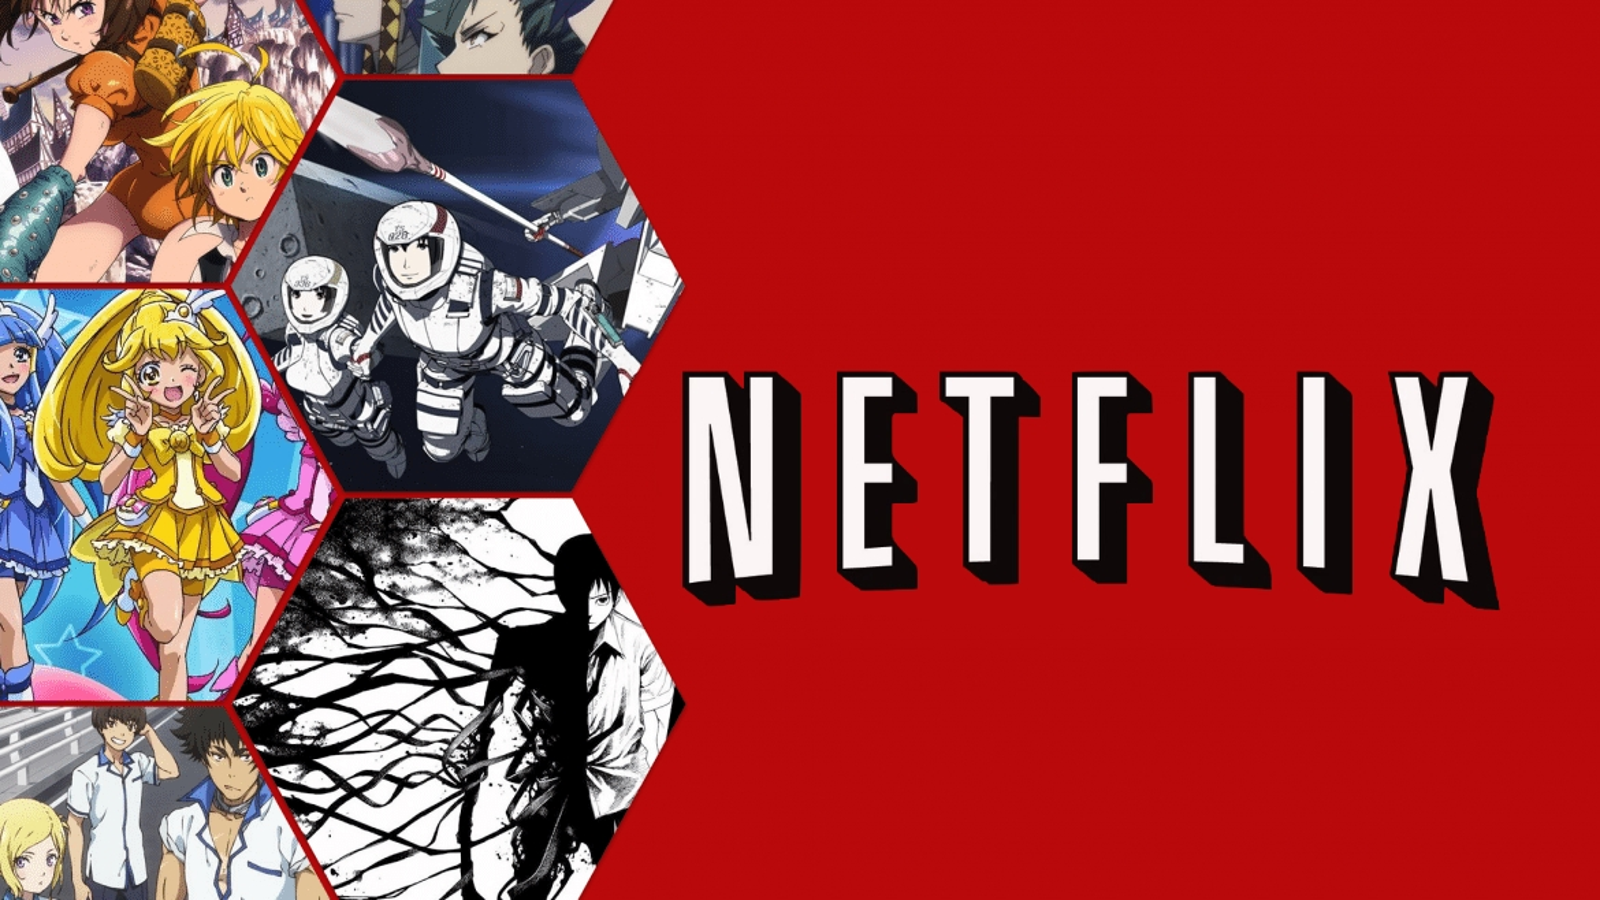 MELHORES ANIMES DA NETFLIX - Novos Animes Na Netflix (lançamentos) Que Você  Precisa Conhecer 